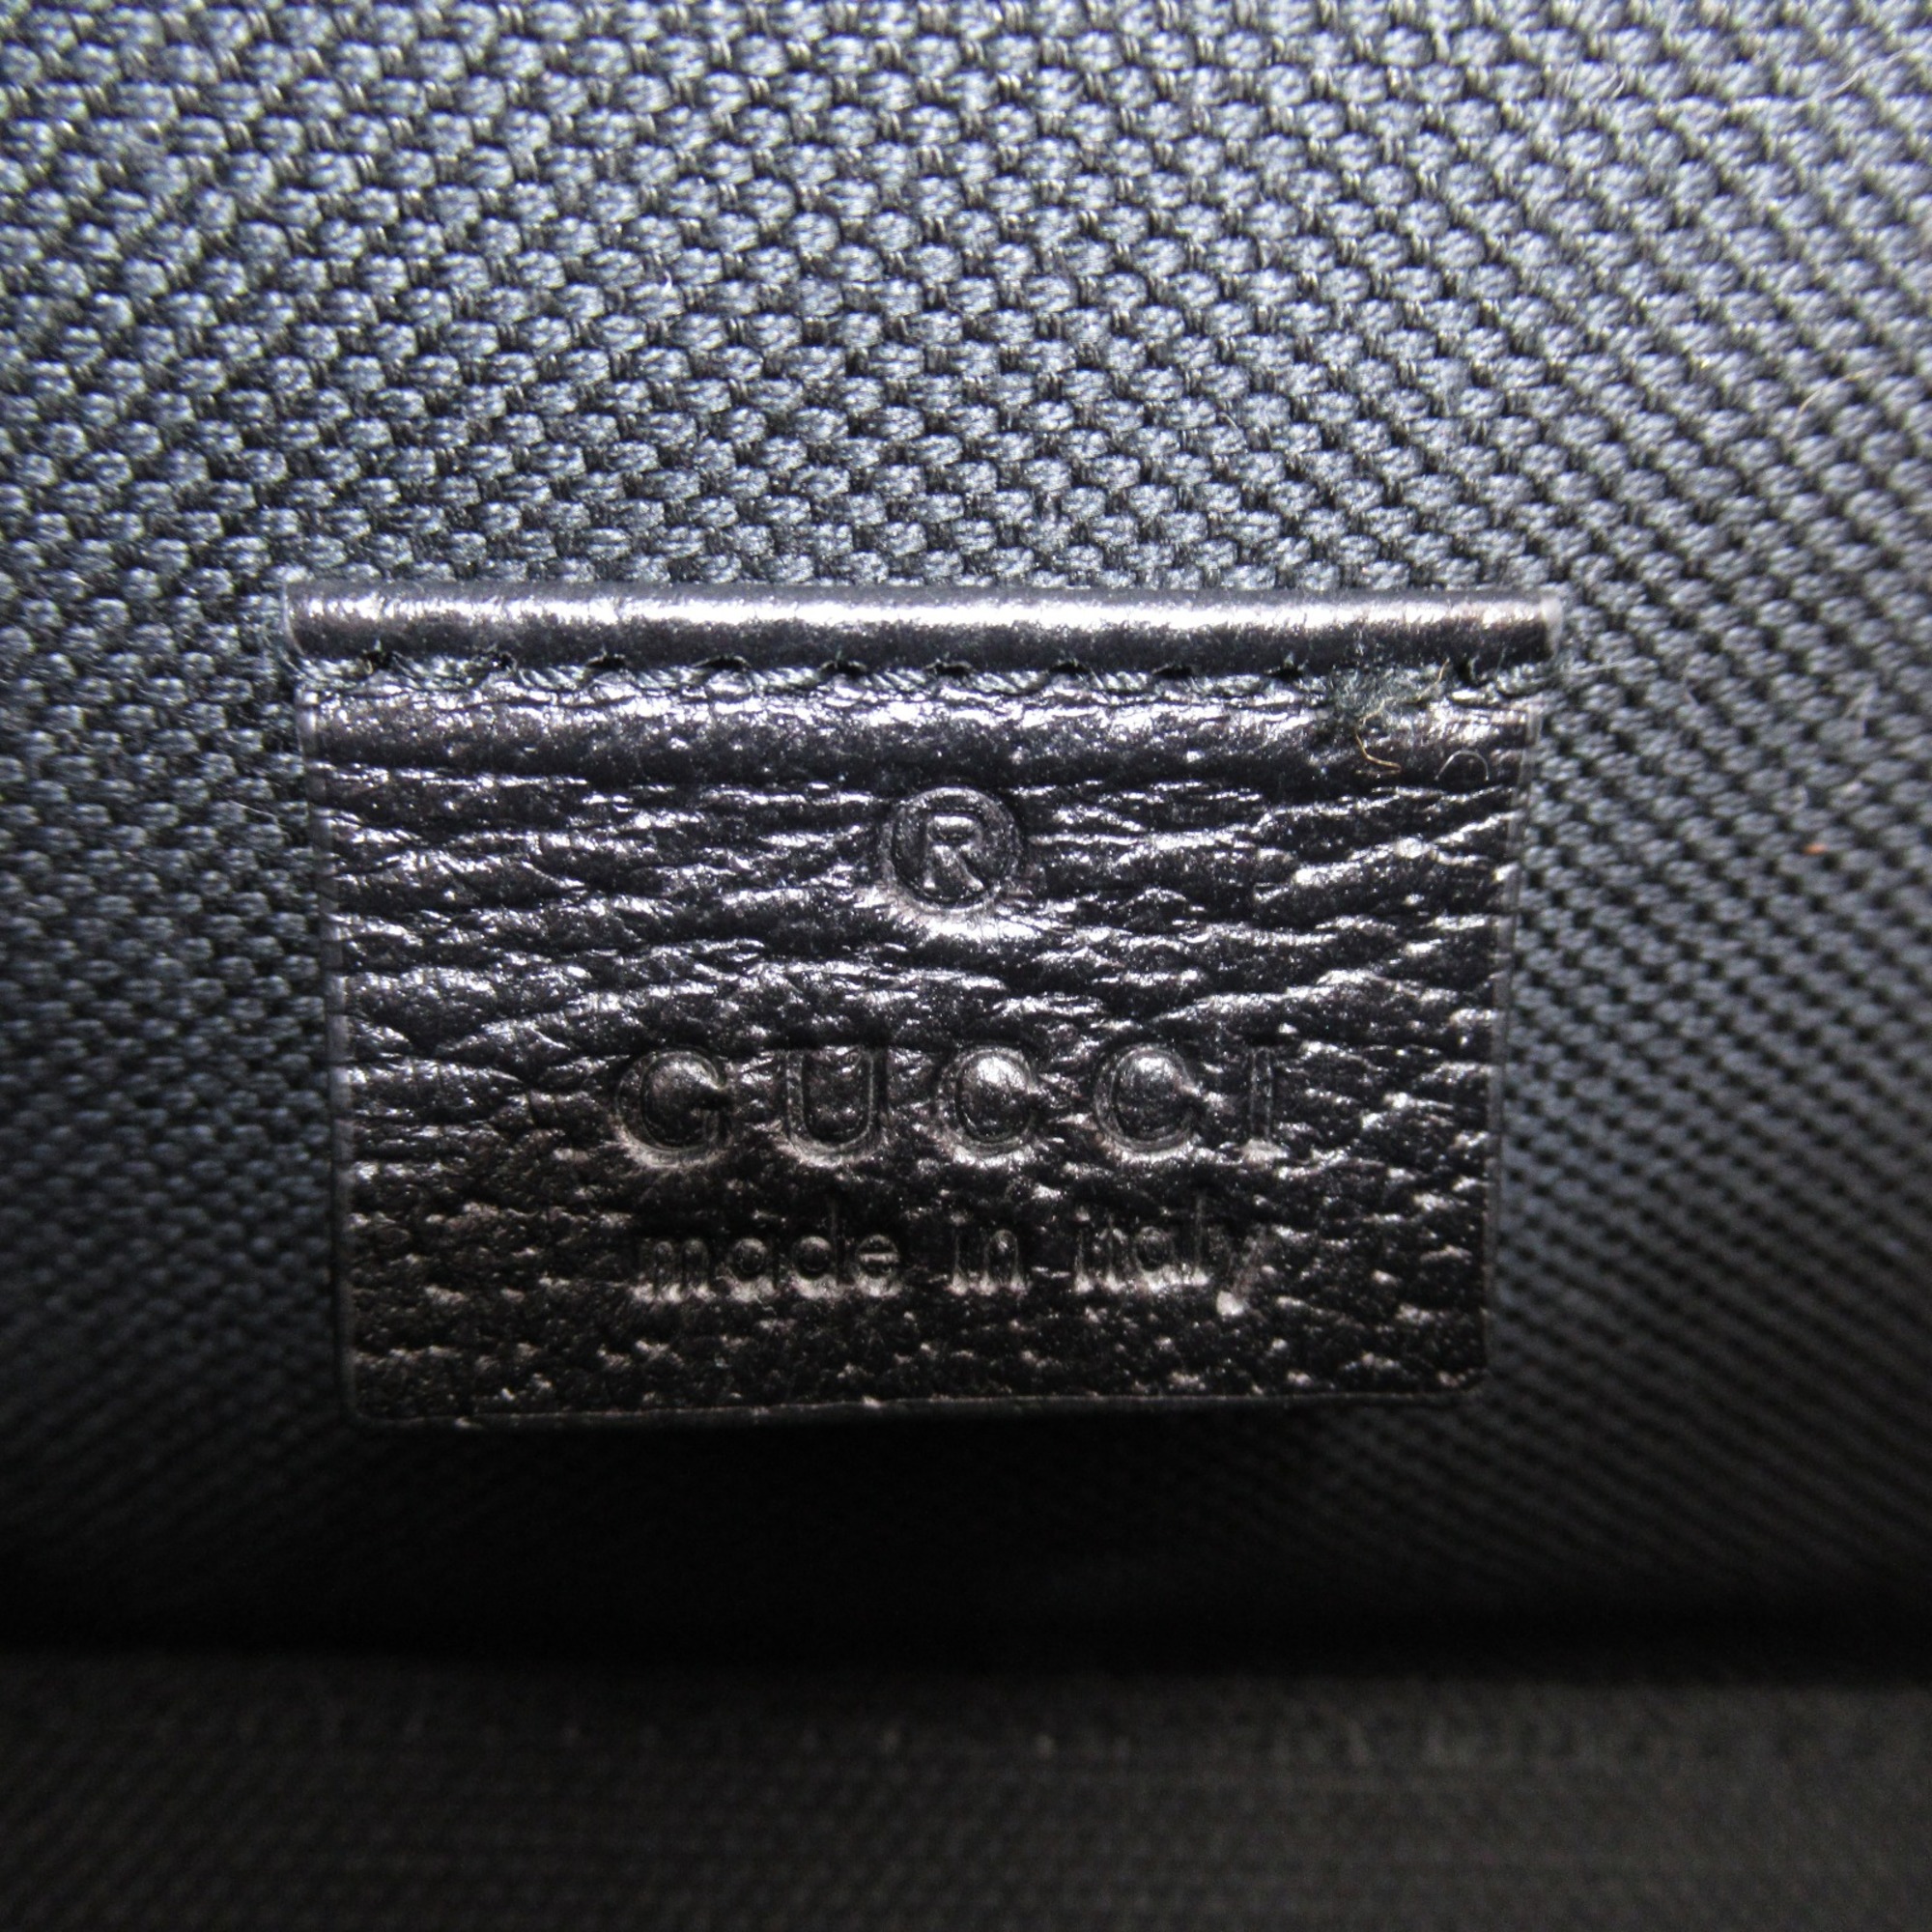 GUCCI Horsebit 1955 Mini Shoulder Bag Black canvas leather 699296